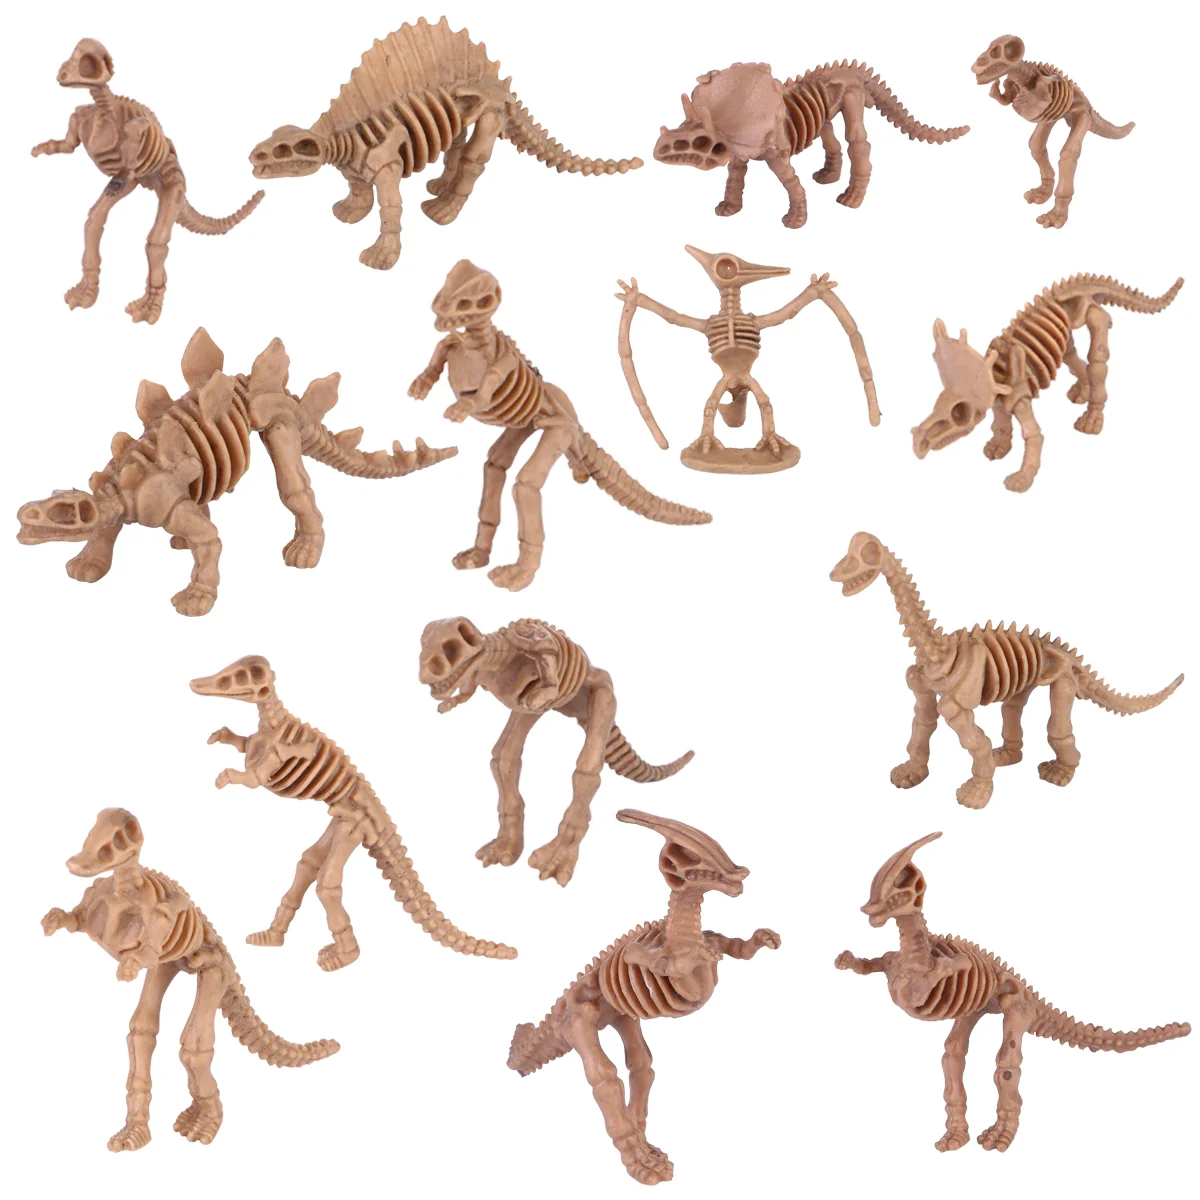 

Моделирование динозавра скелет кости модель пластиковый динозавр ископаемая игрушка обучающие игрушки экшн-Фигурки Коллекционная игрушка для детей